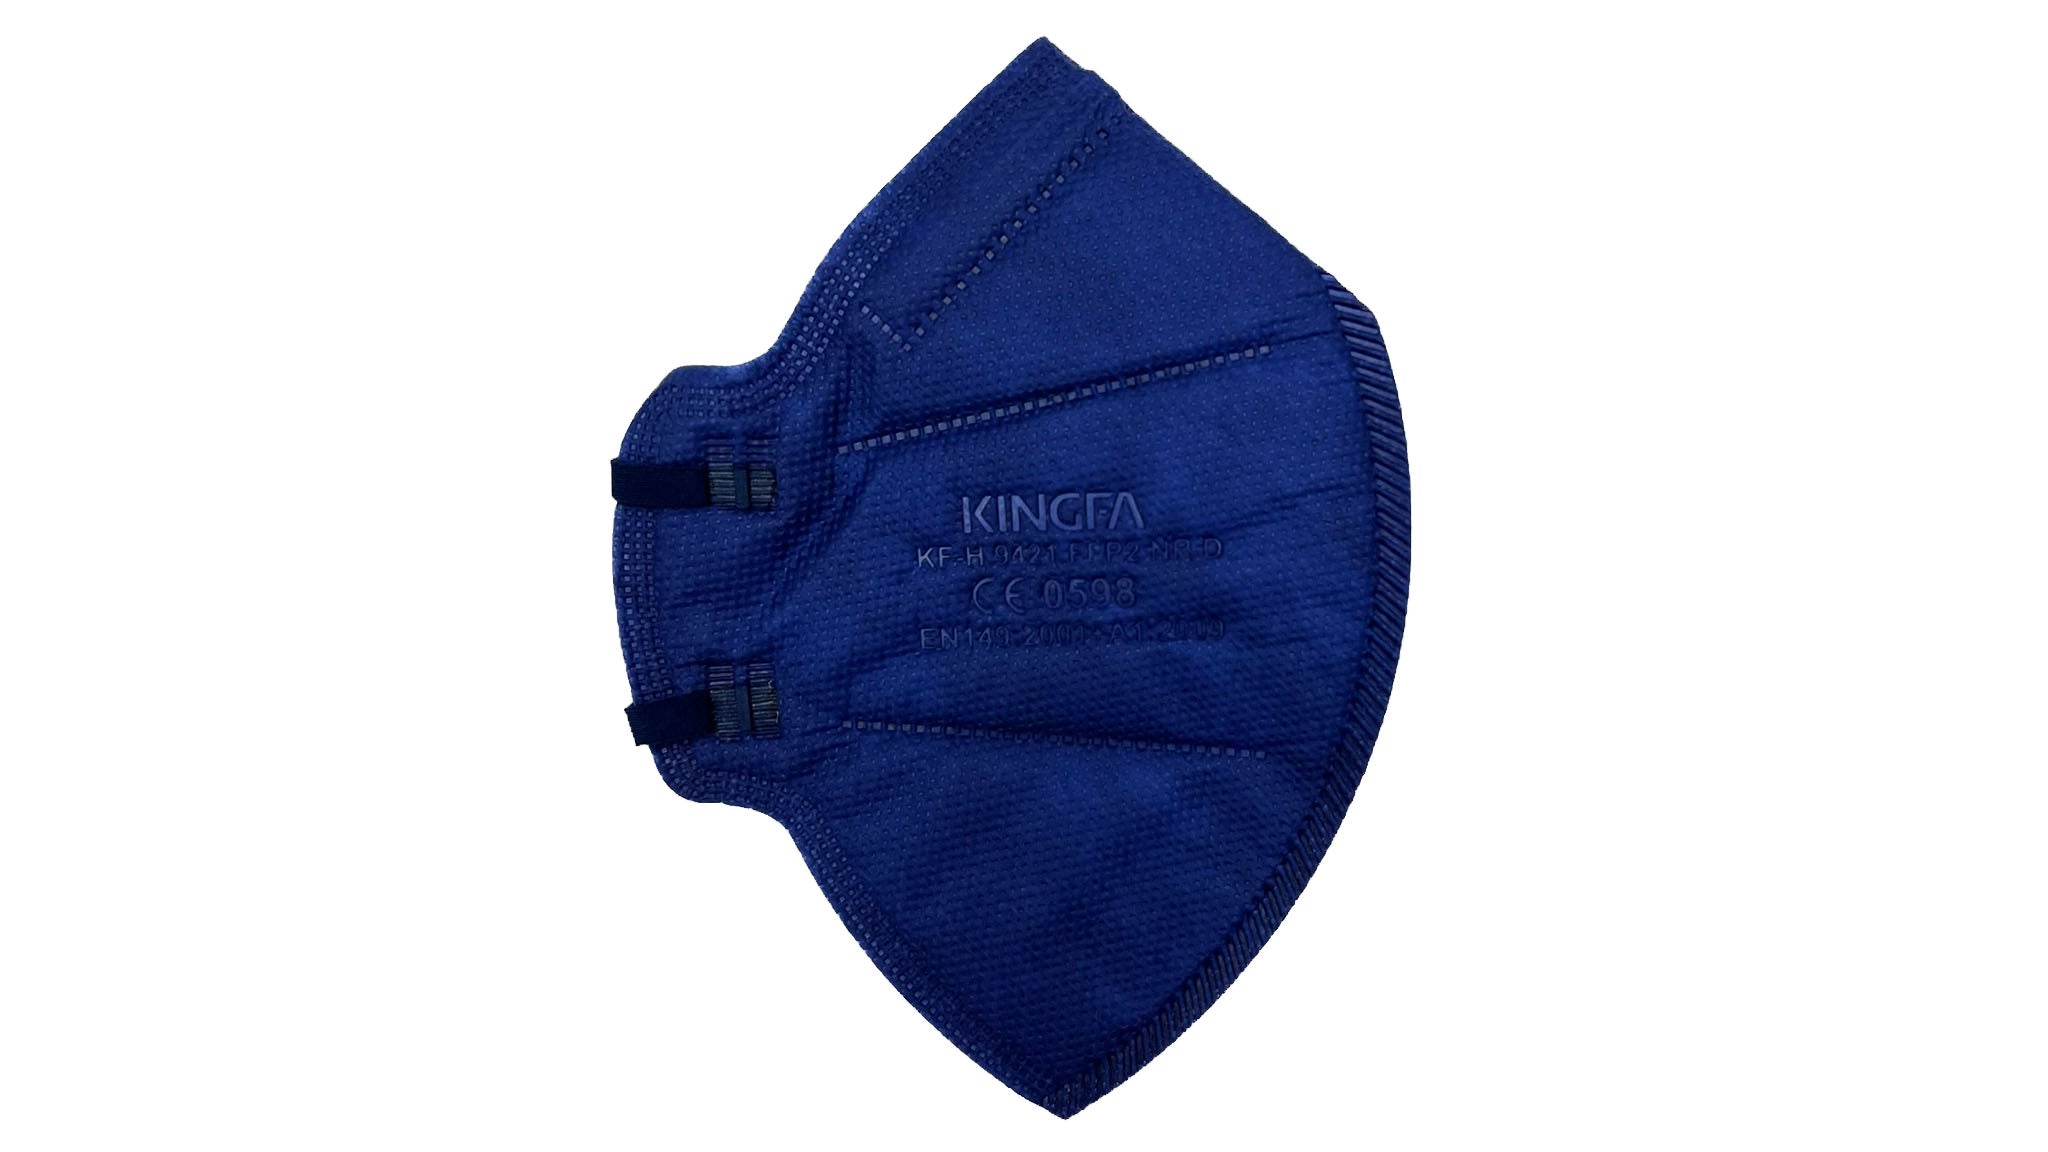 Kingfa FFP2 Masken einzeln eingeschweißt (10 Masken je Box) - blau/schwarz